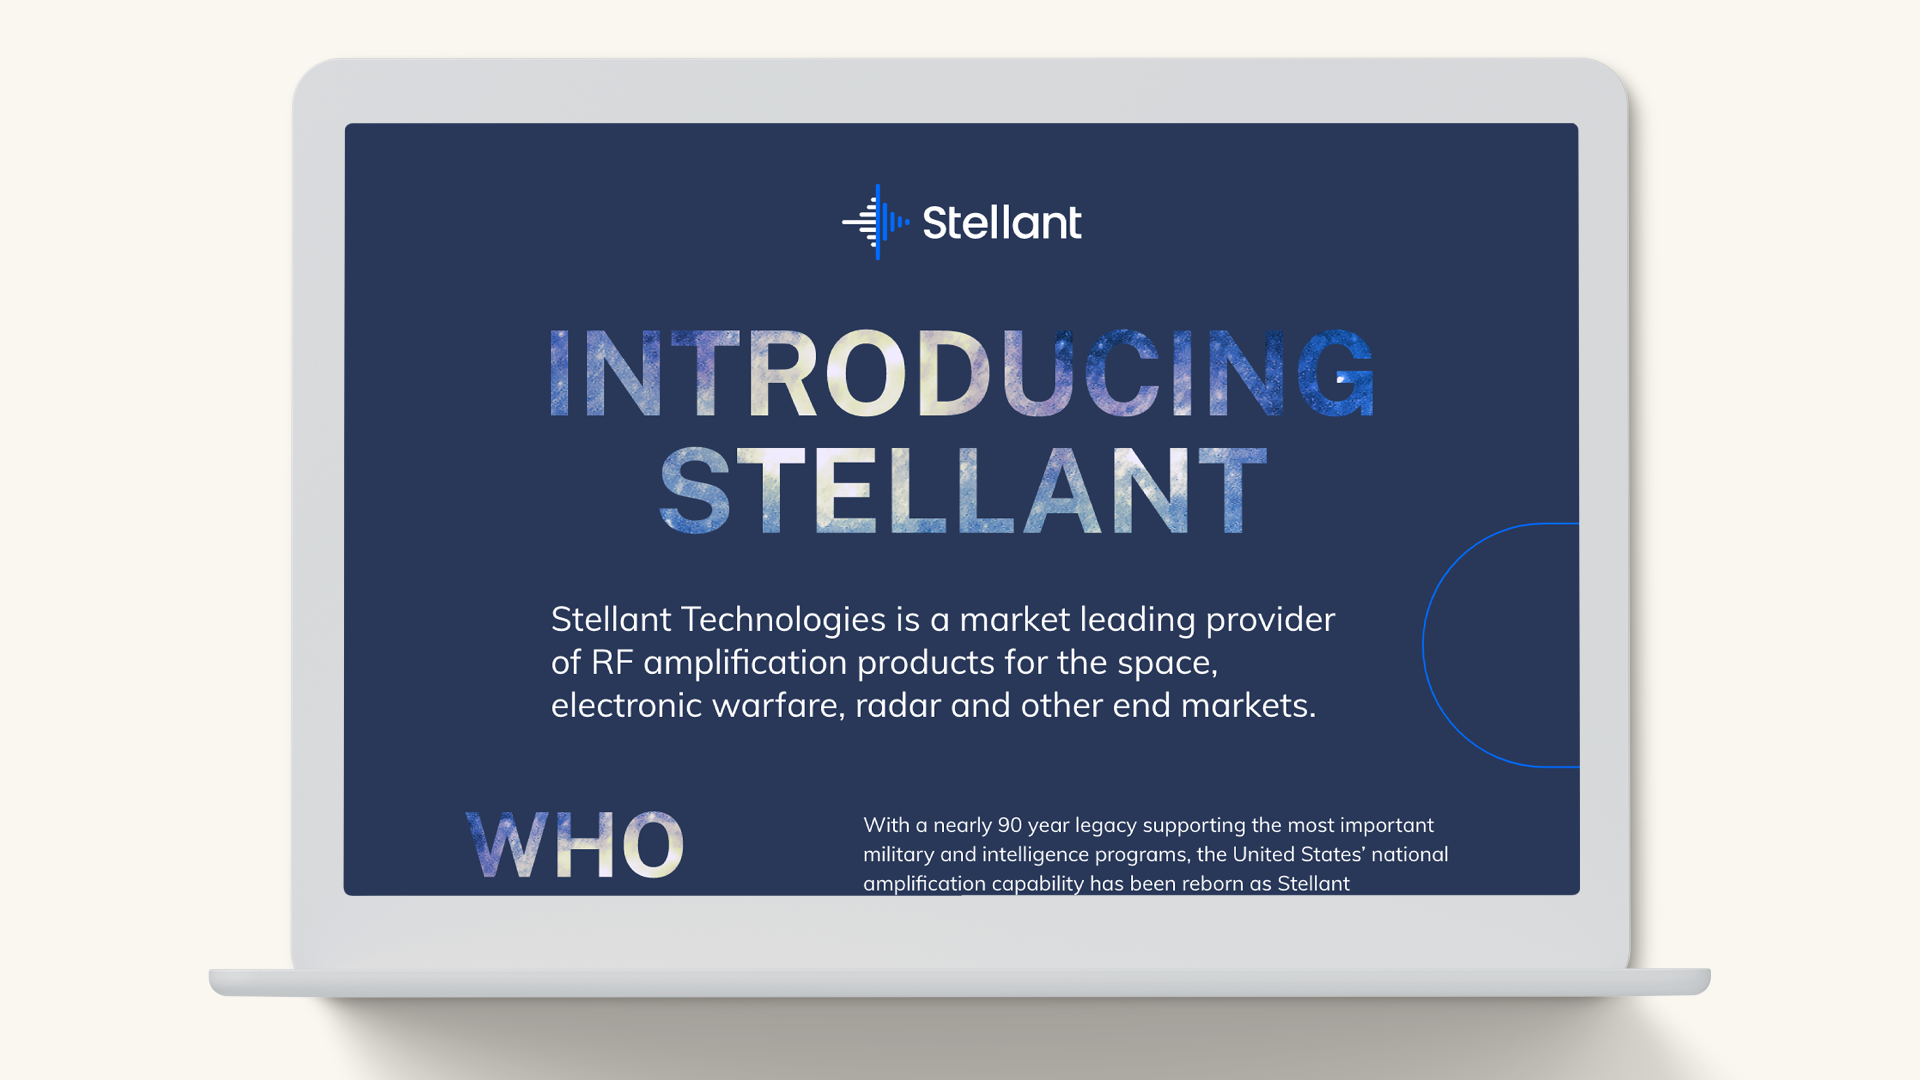 Stellant_Web_LandingPage